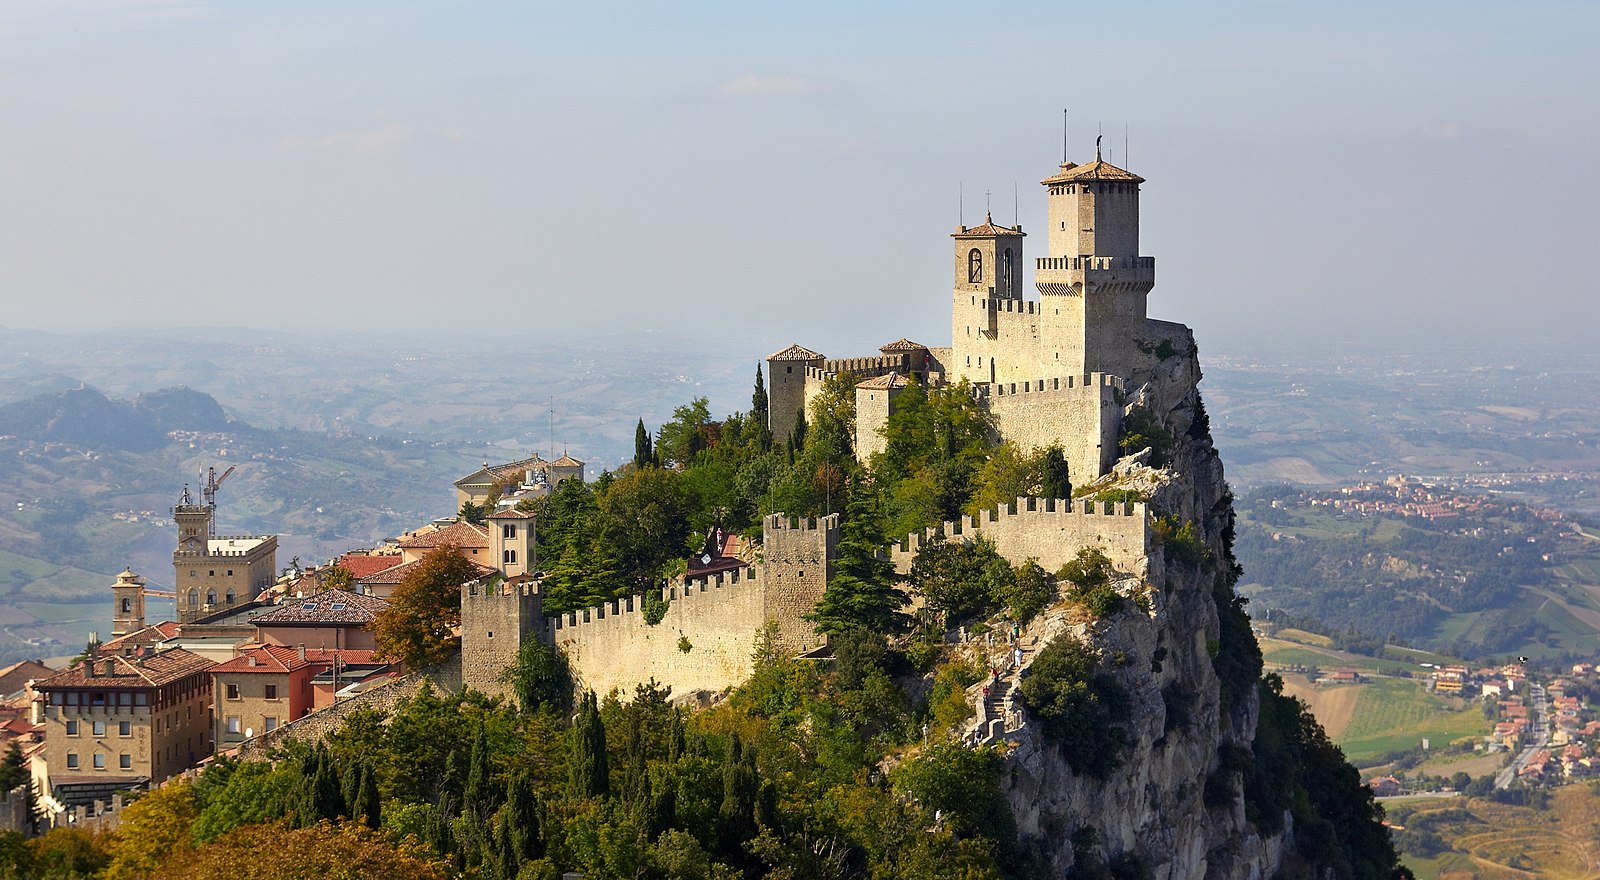 Responsabilità e dialogo, la ricetta per rilanciare San Marino